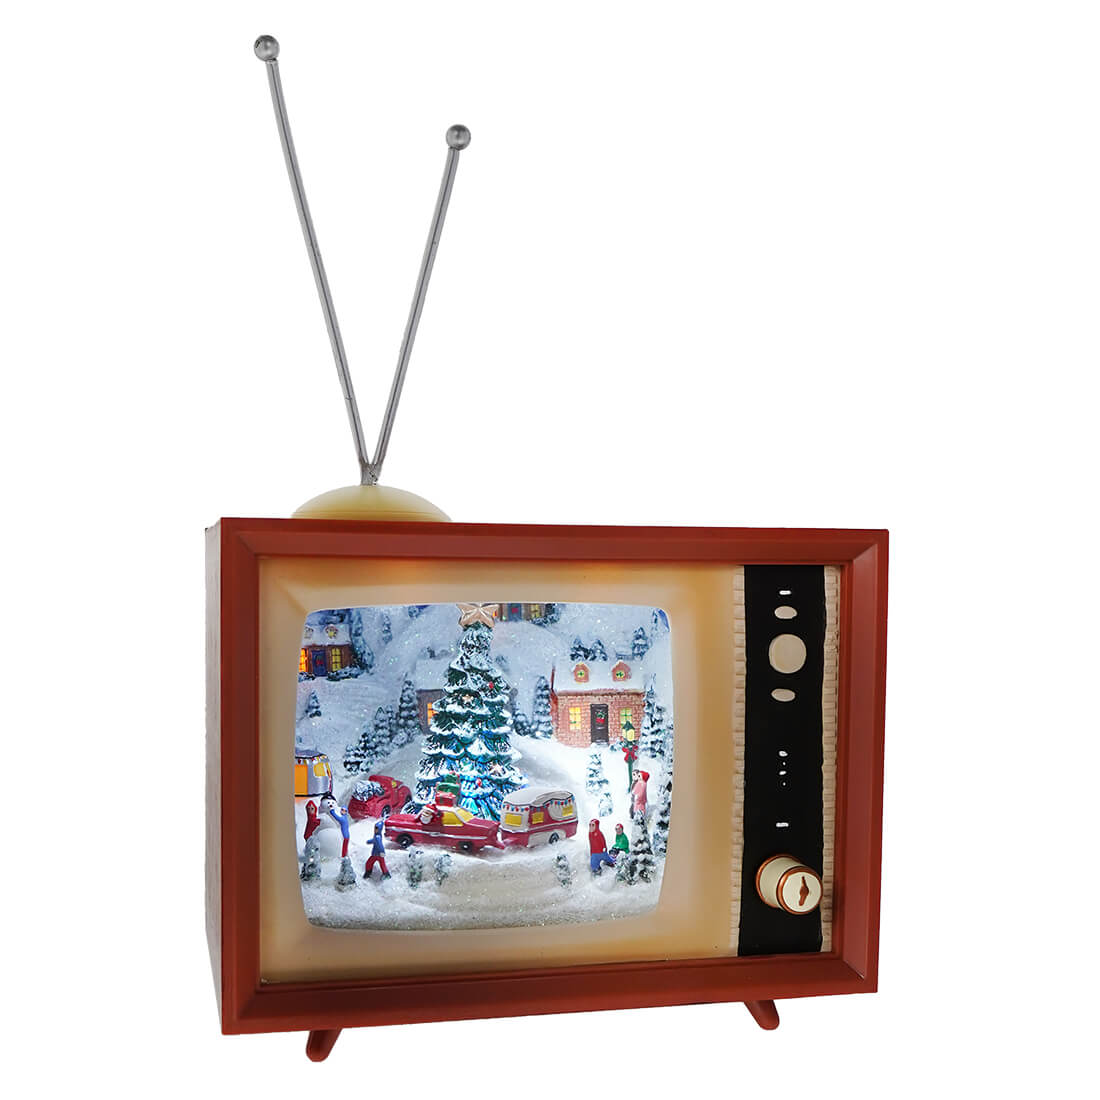 Animated Musical Christmas TV